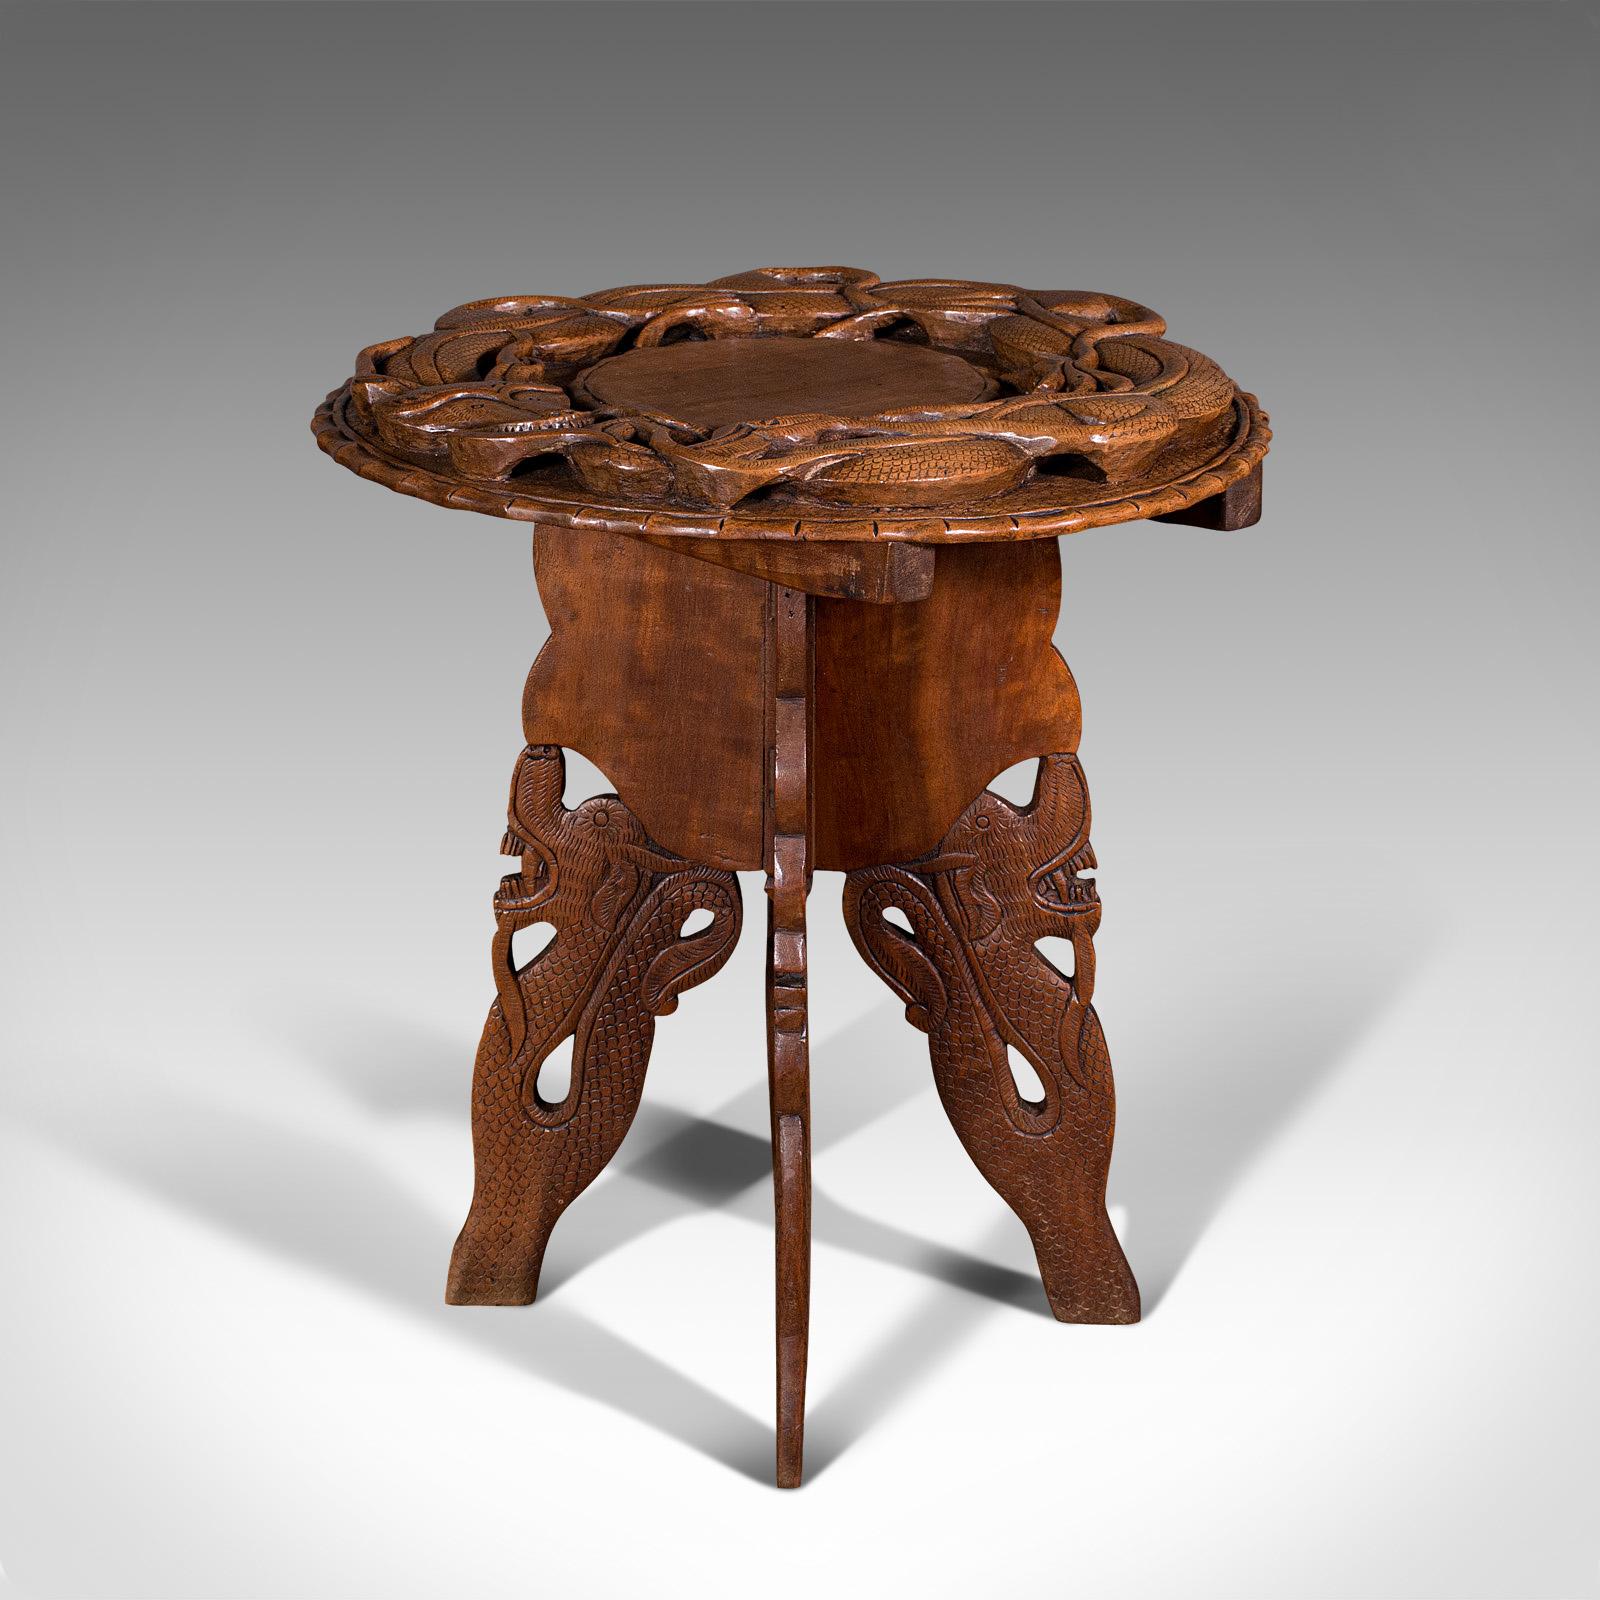 Dies ist ein geschnitzter Vintage-Beistelltisch. Ein chinesischer Beistell- oder Lampentisch aus Ulmenholz im Art-Déco-Stil, aus der Mitte des 20. Jahrhunderts, um 1940.

Hervorragende Schnitzereien an diesem reizenden kleinen Tisch
Zeigt eine